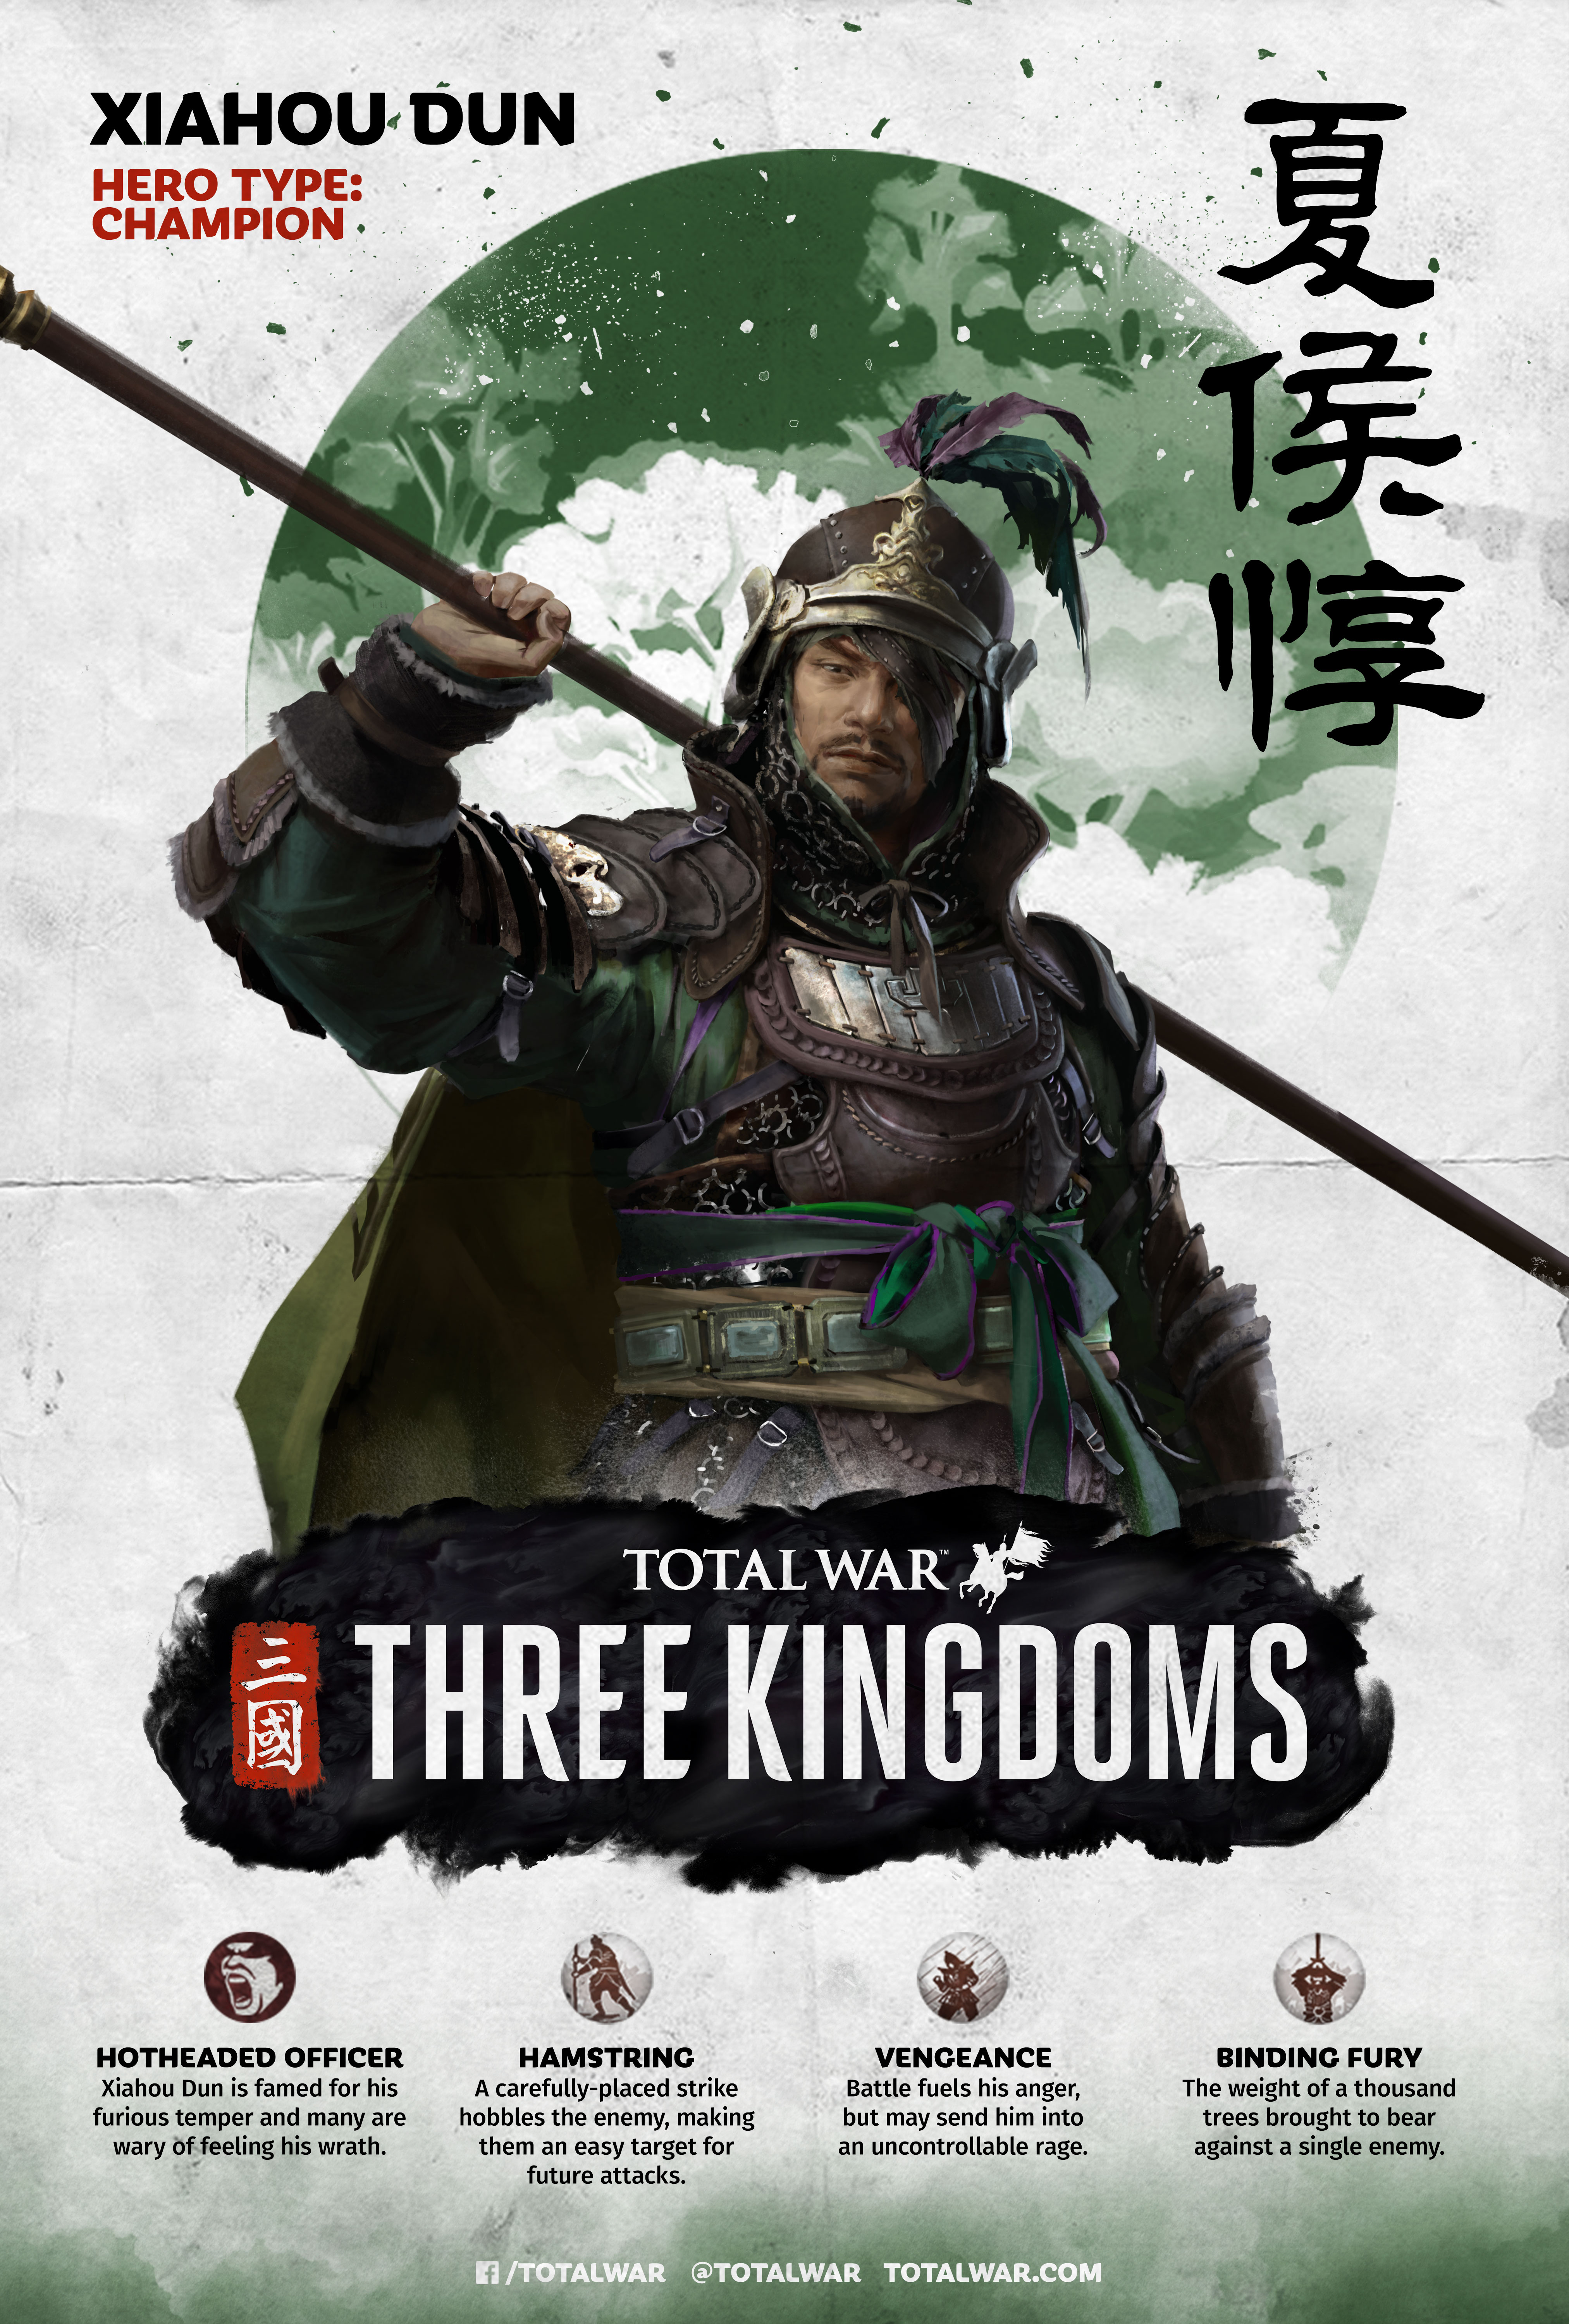 Xiahou Dun | Total War Wiki | Fandom